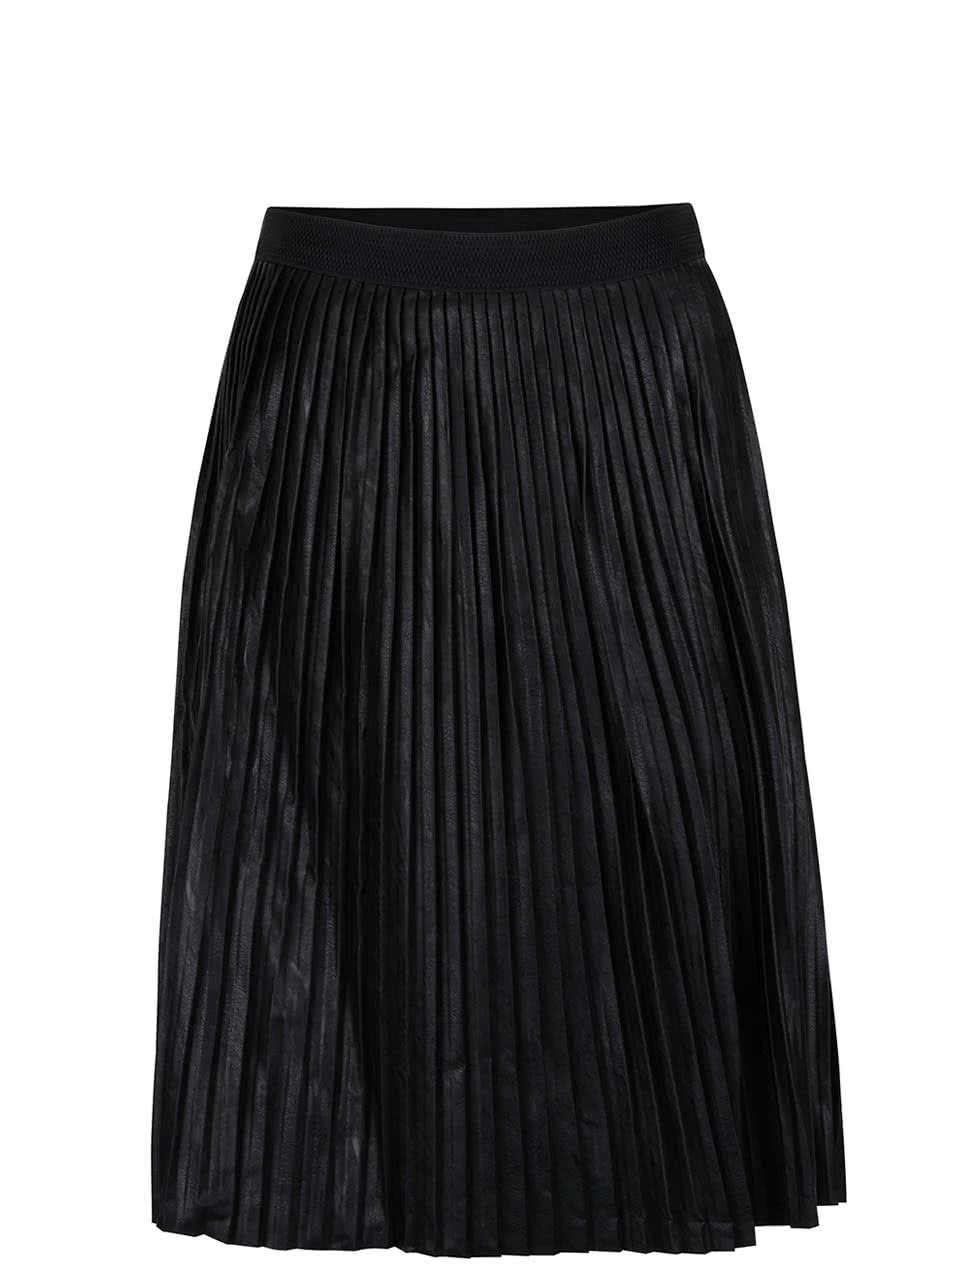 Černá koženková plisovaná sukně ZOOT